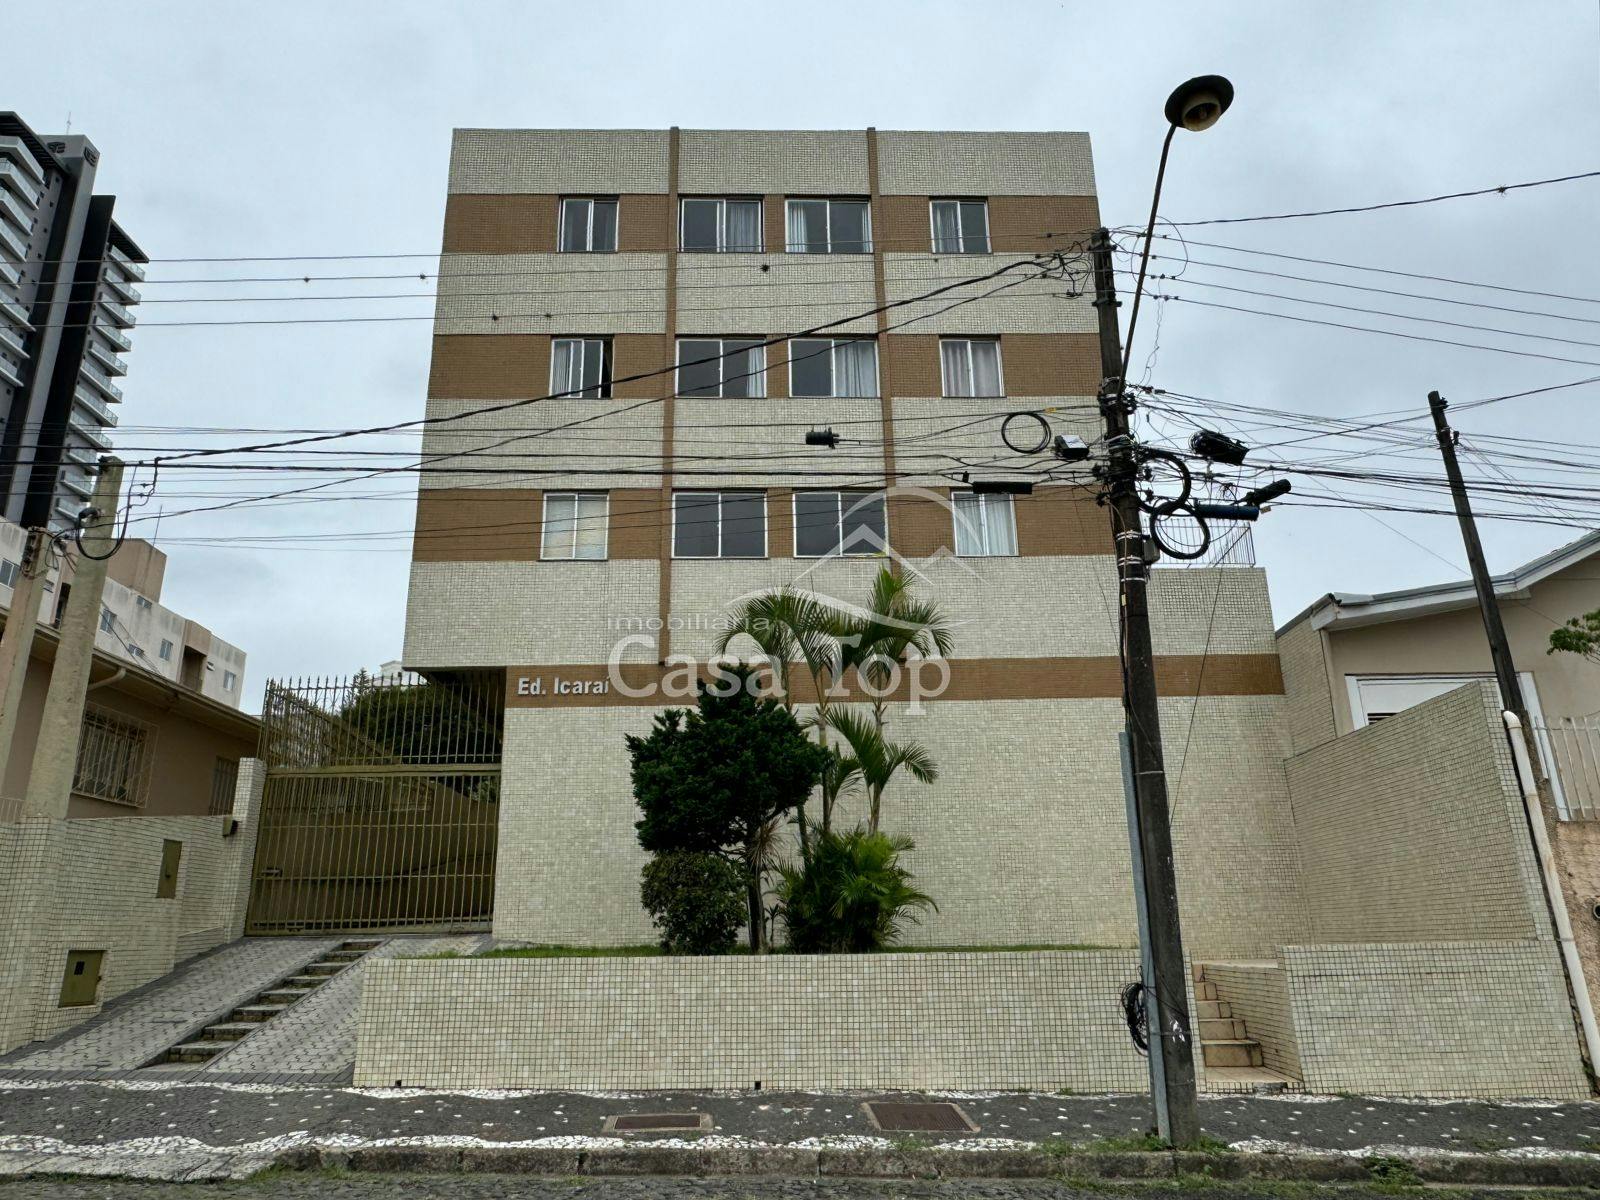 Apartamento semimobiliado à venda Edifício Icaraí - Órfãs